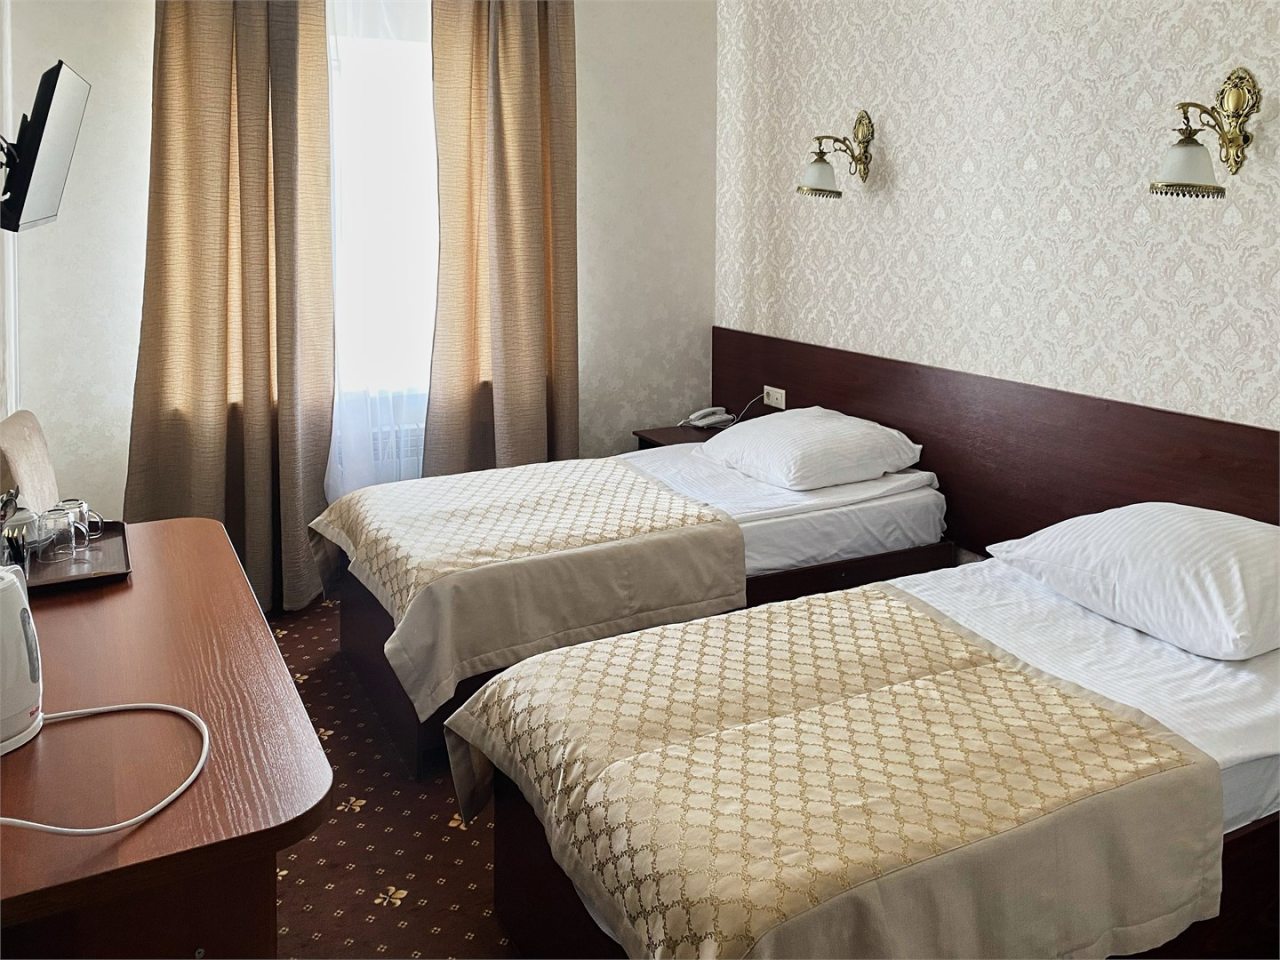 Двухместный (Стандарт с душем, двумя раздельными кроватями, 19 кв м), Отель Калипсо